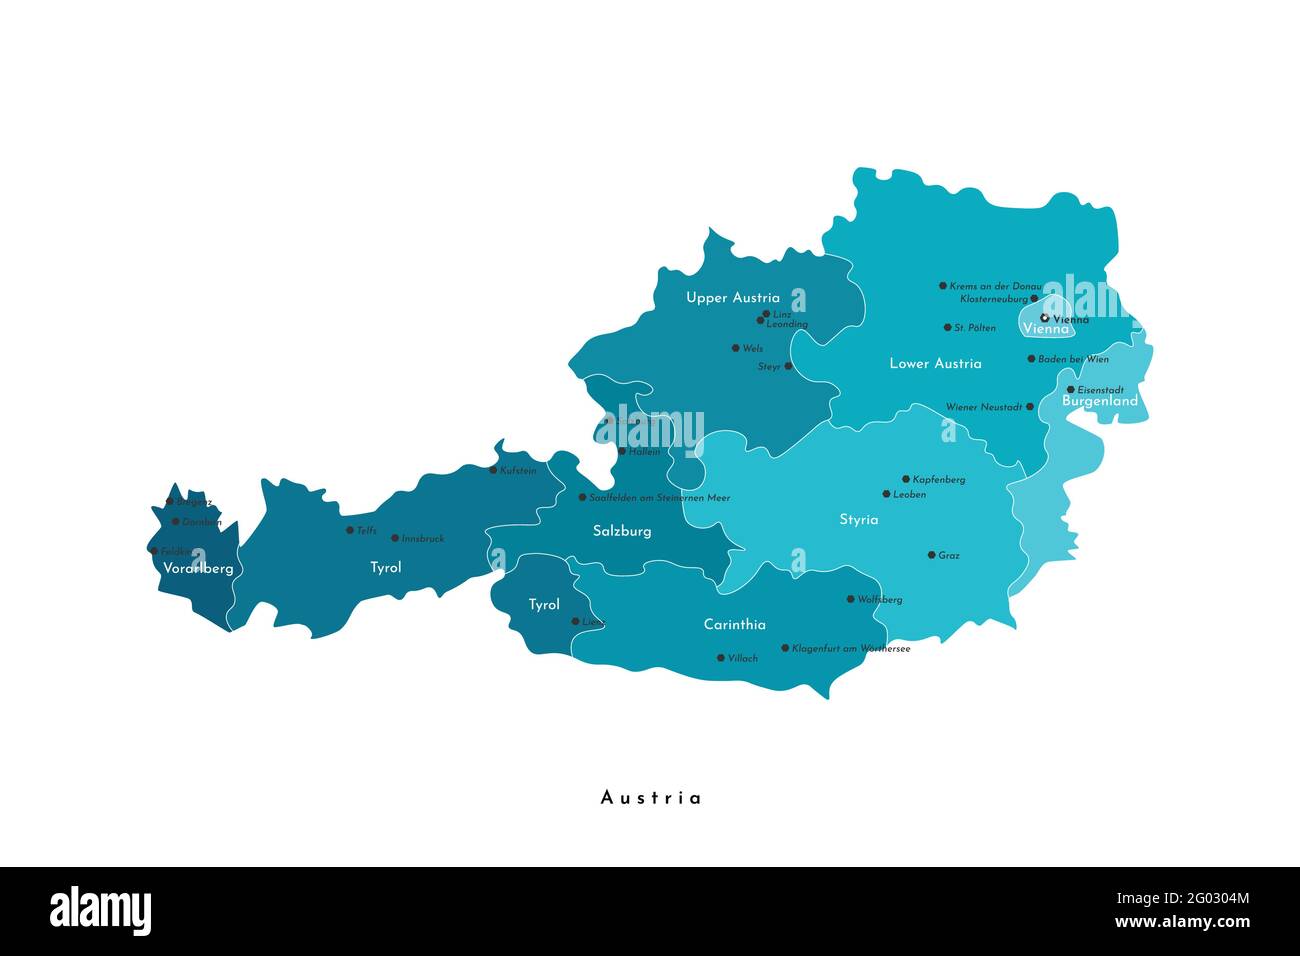 Vektor-isolierte Illustration. Vereinfachte Verwaltungskarte von Österreich in blauen Farben. Weißer Hintergrund und Umrisse. Namen österreichischer Städte und sta Stock Vektor